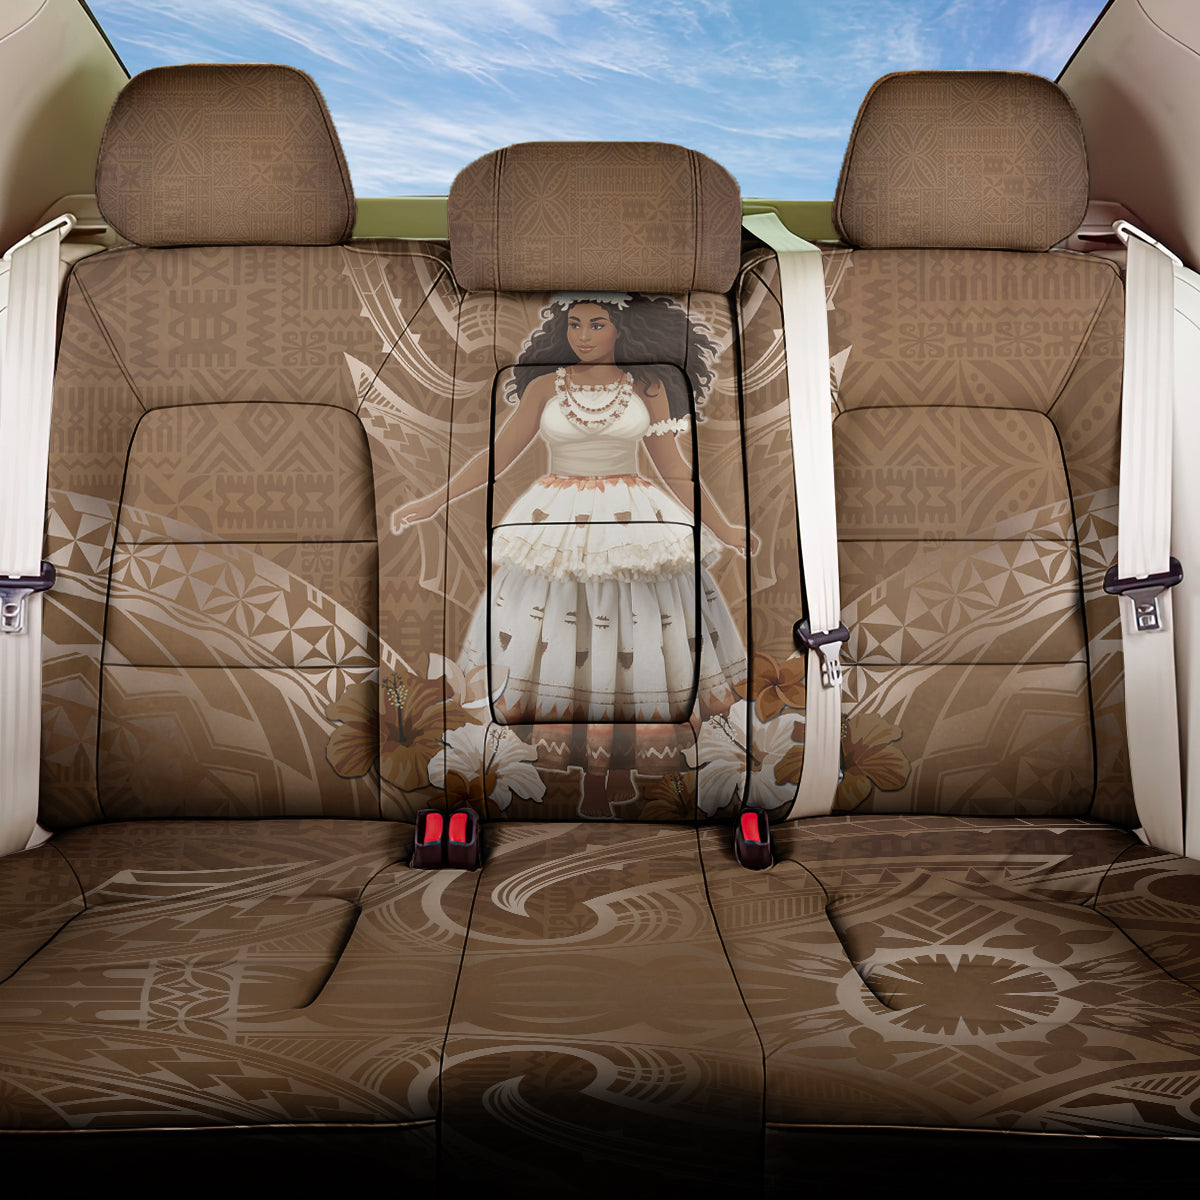 Bula Fiji Women's Day Back Car Seat Cover With Fijian Tapa Pattern LT05